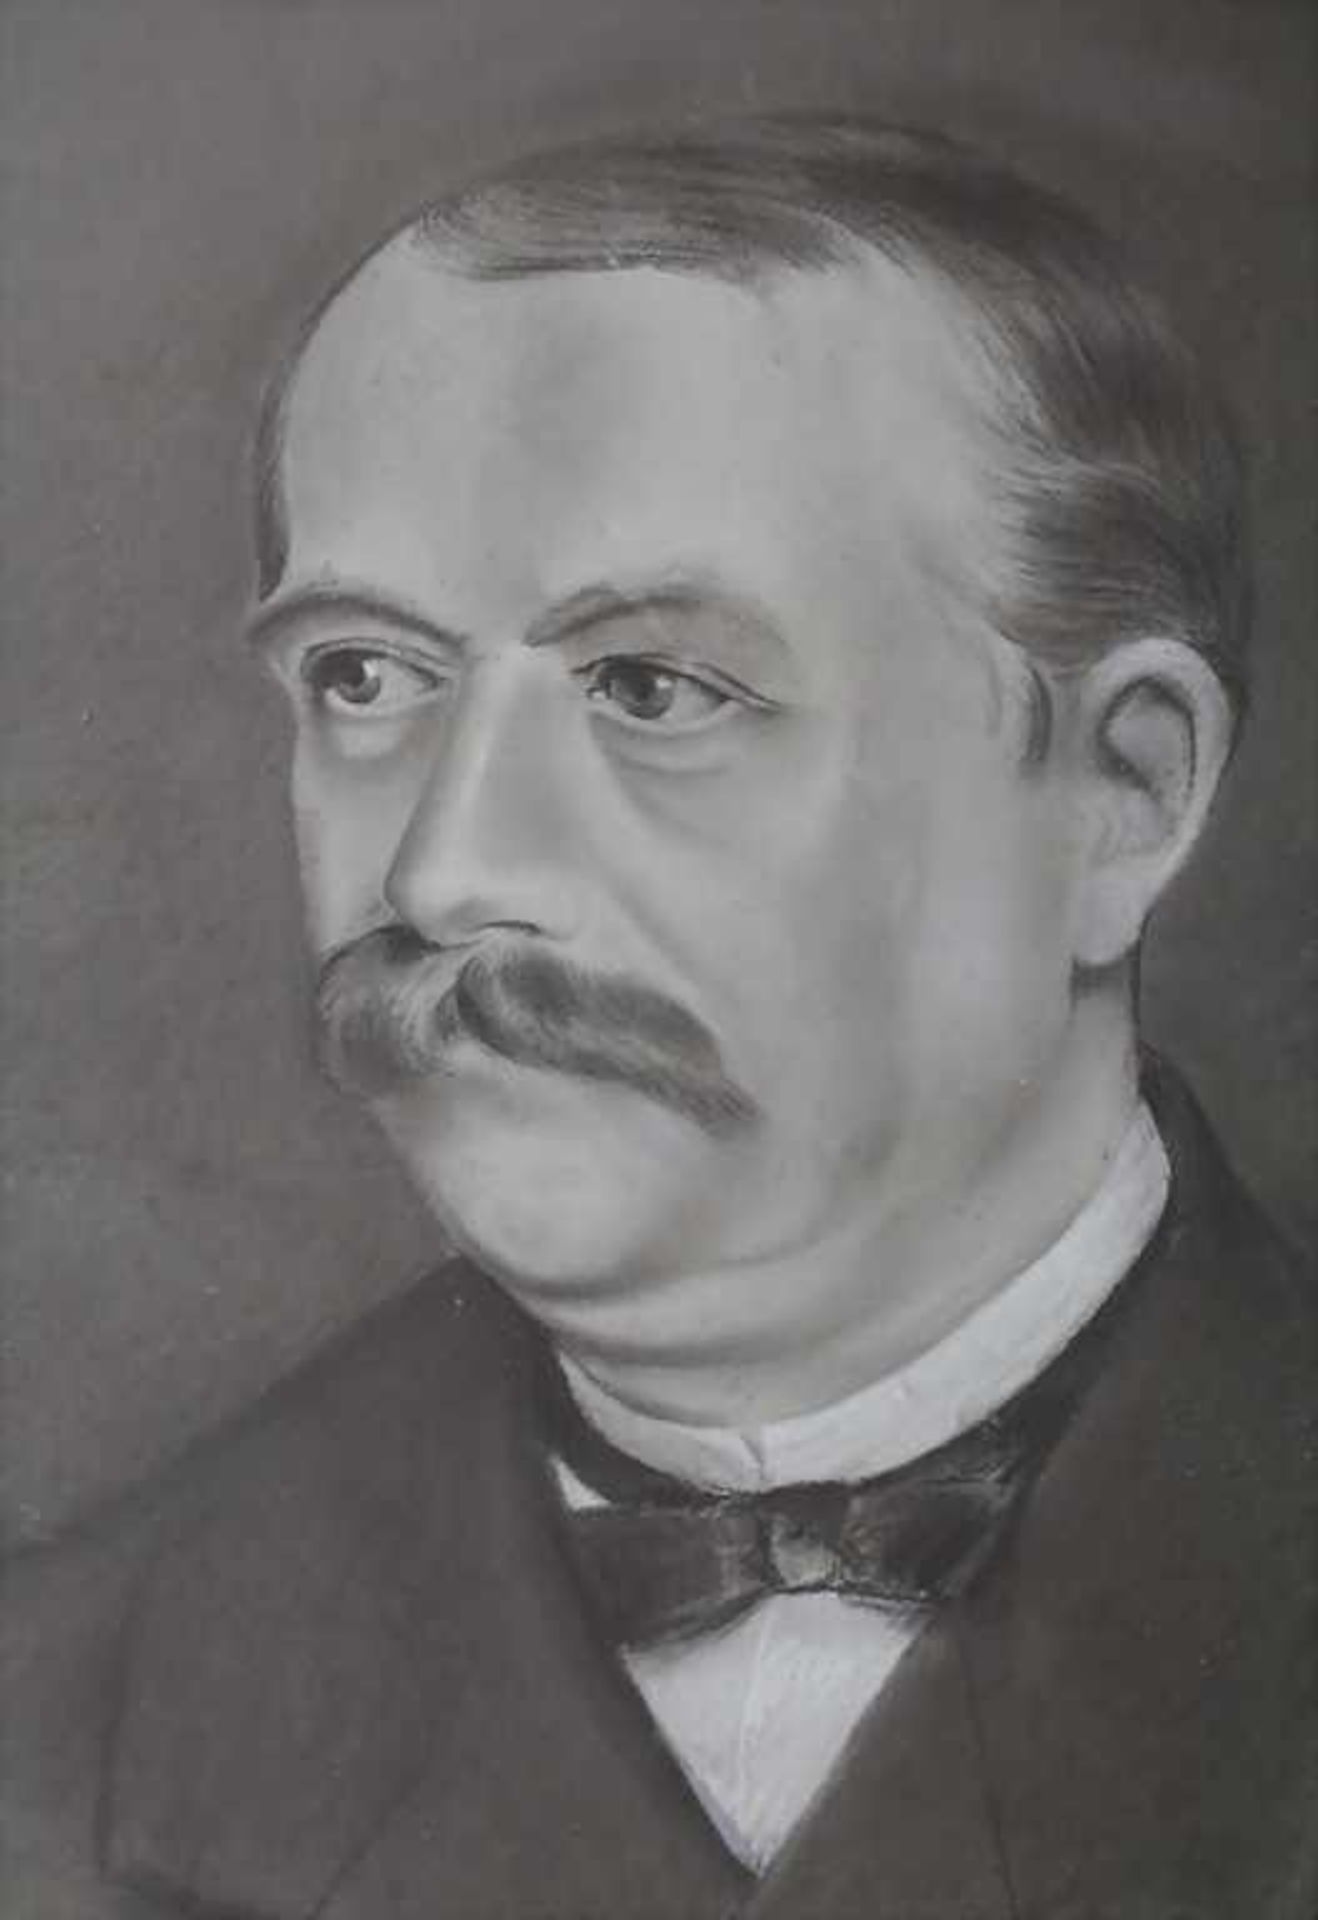 H. von Aufseß (19. Jh.), 'Herrenporträt' / 'A portrait of a gentleman'Technik: Kreide auf Papier,